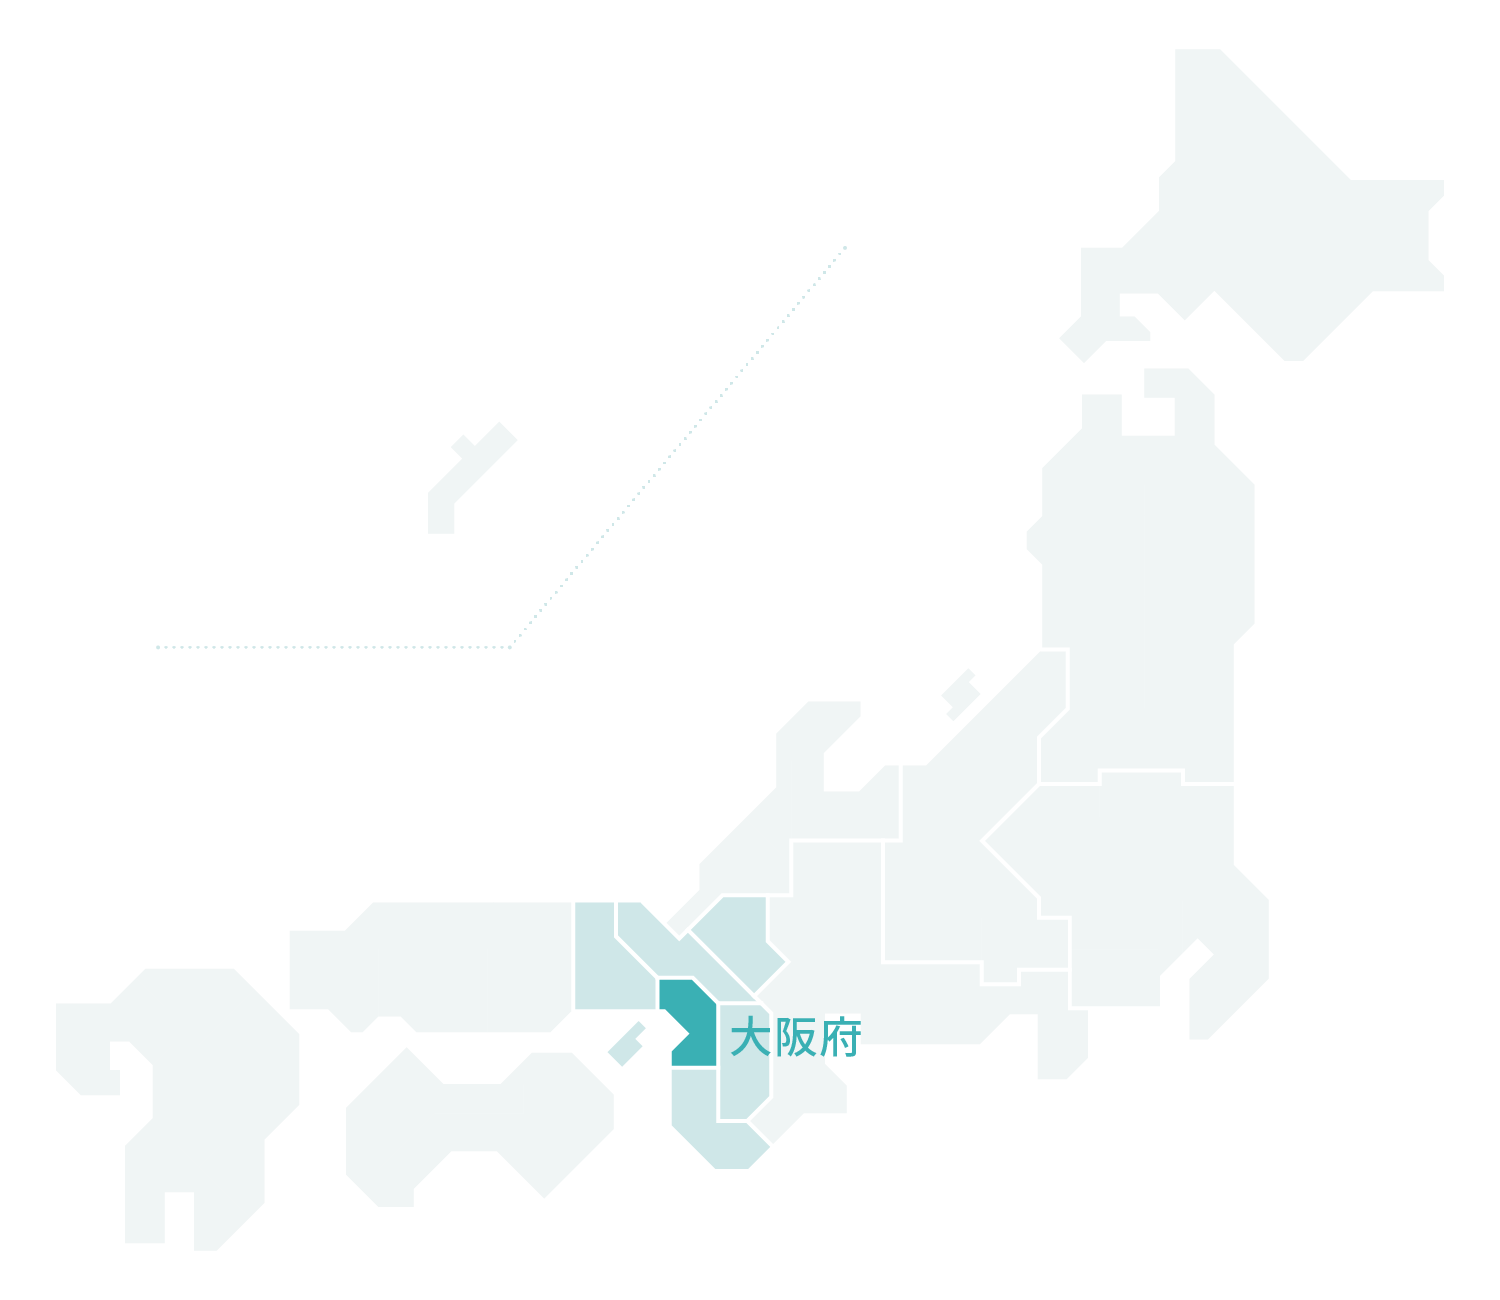 大阪府マップ